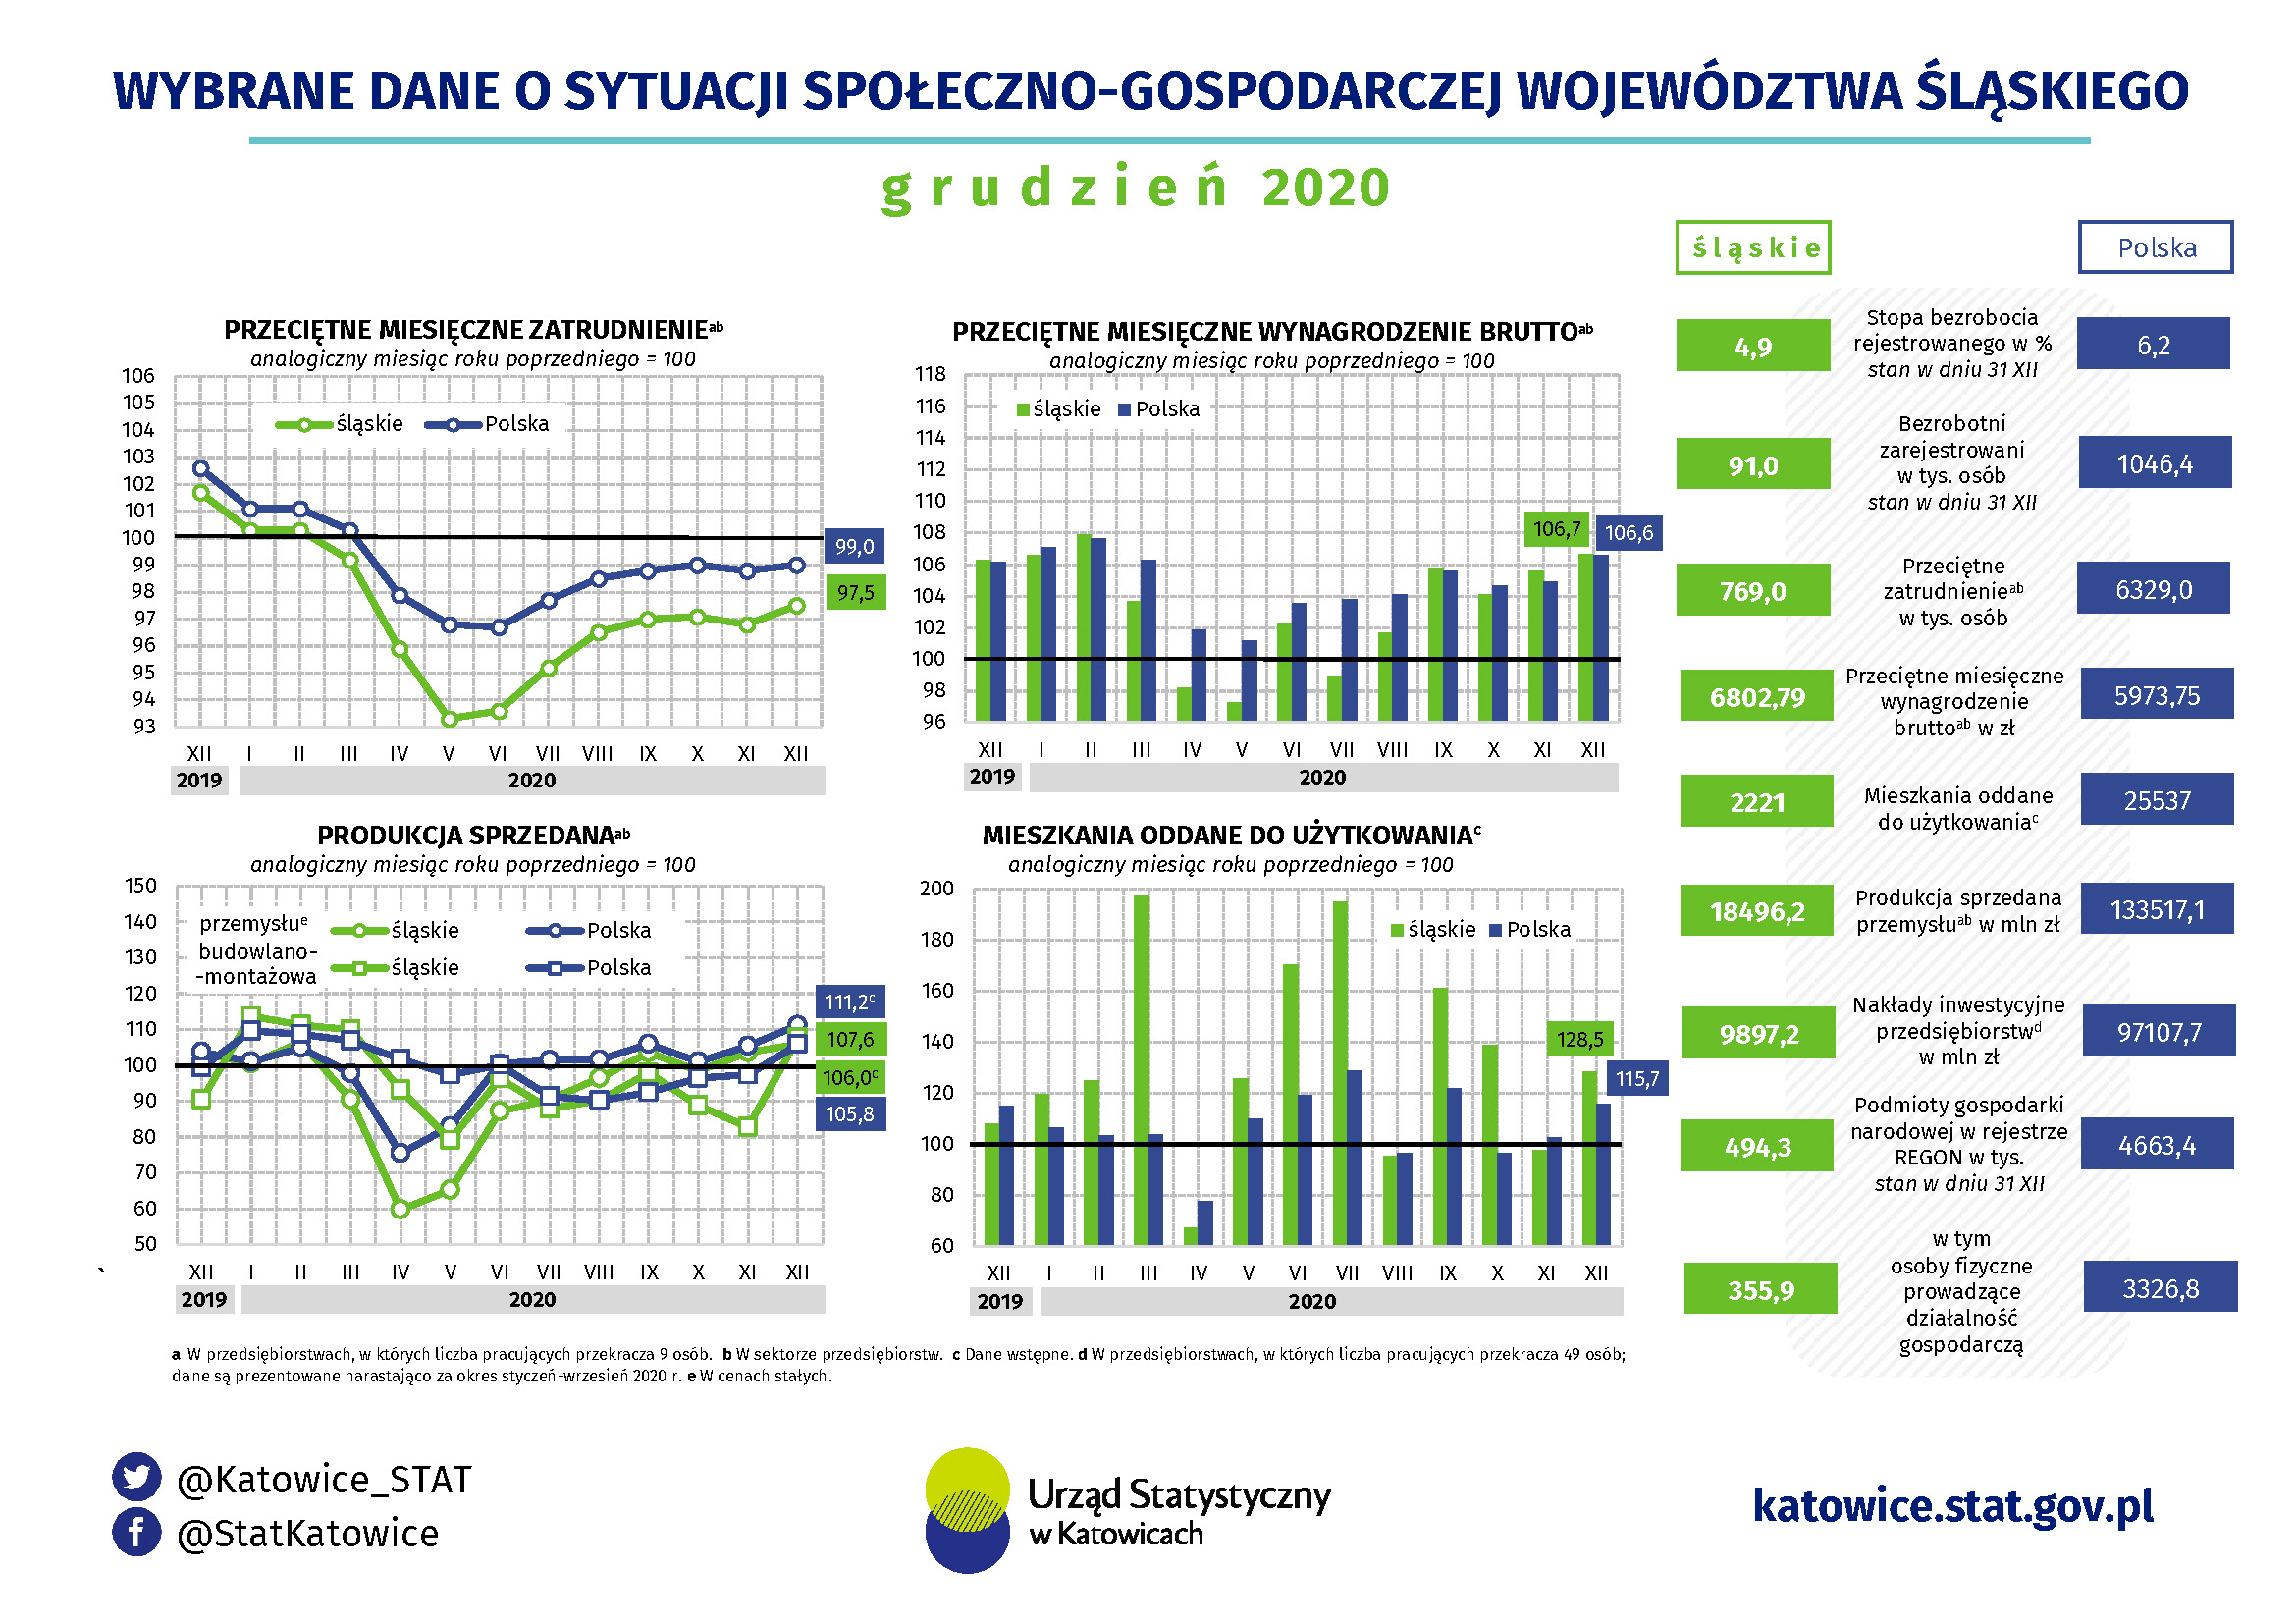 Infografika -Wybrane dane o sytuacji społeczno-gospodarczej województwa śląskiego w grudniu 2020 r.